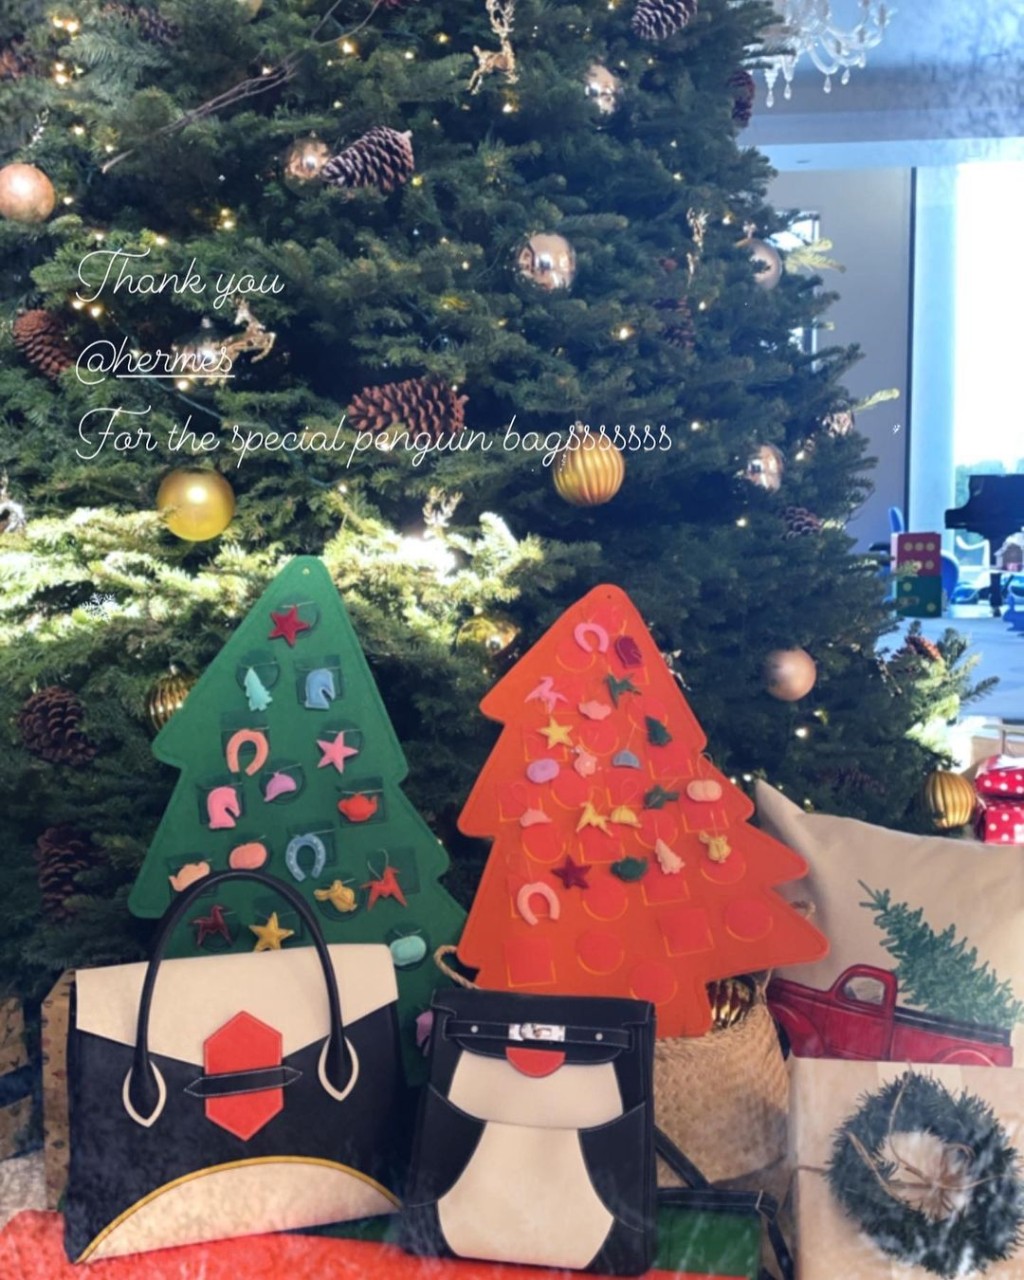 去年圣诞节大刘曾送甘比在Hermès订制的两款企鹅袋。